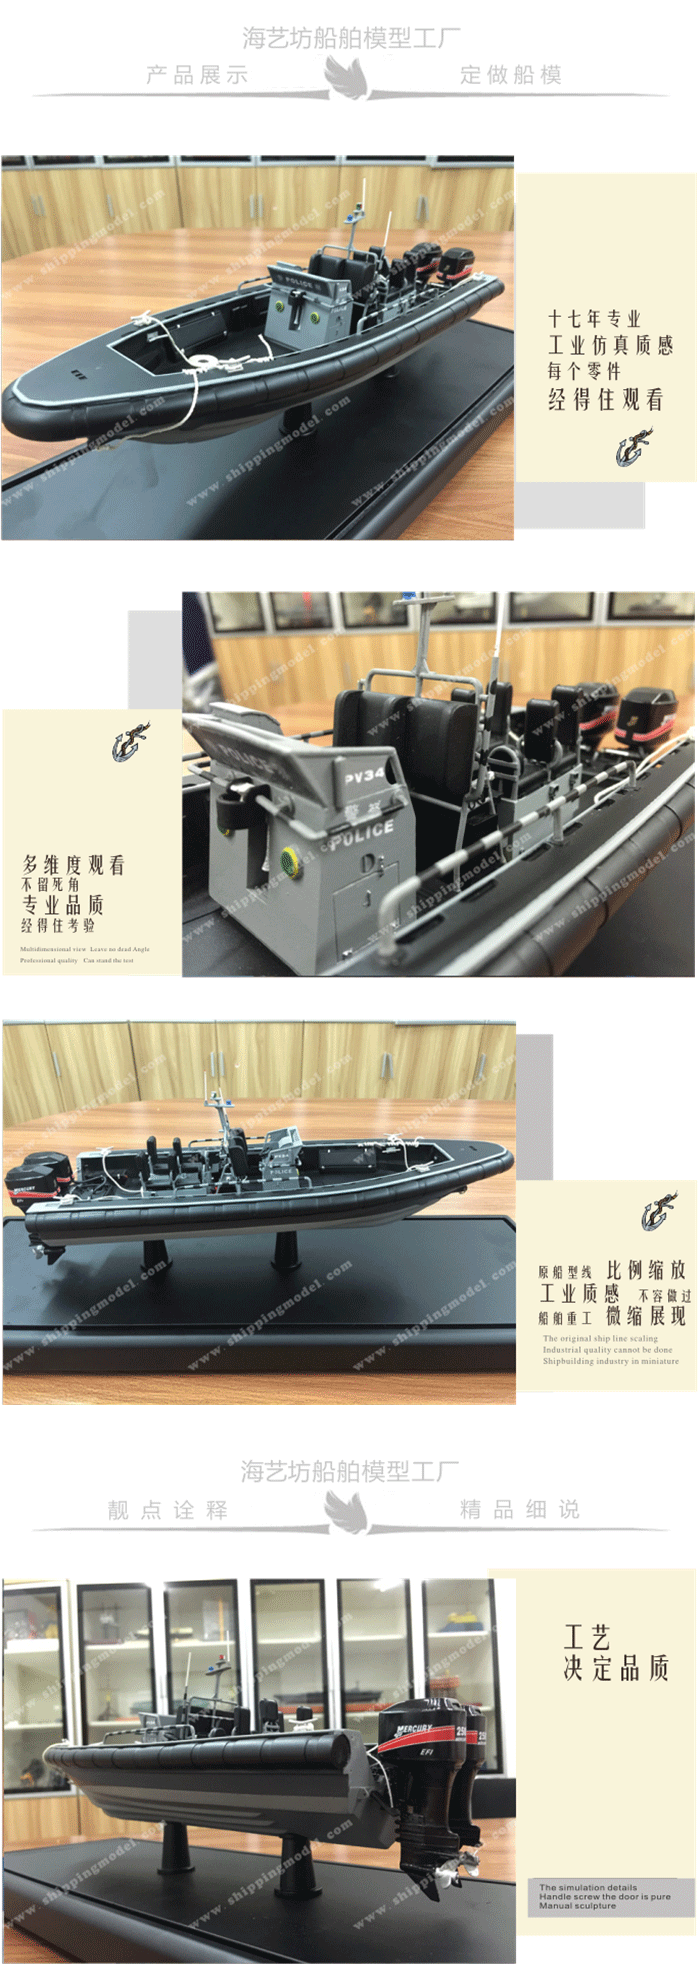 定制船模_40cm巡逻船舶模型定制F_海艺坊模型工厂